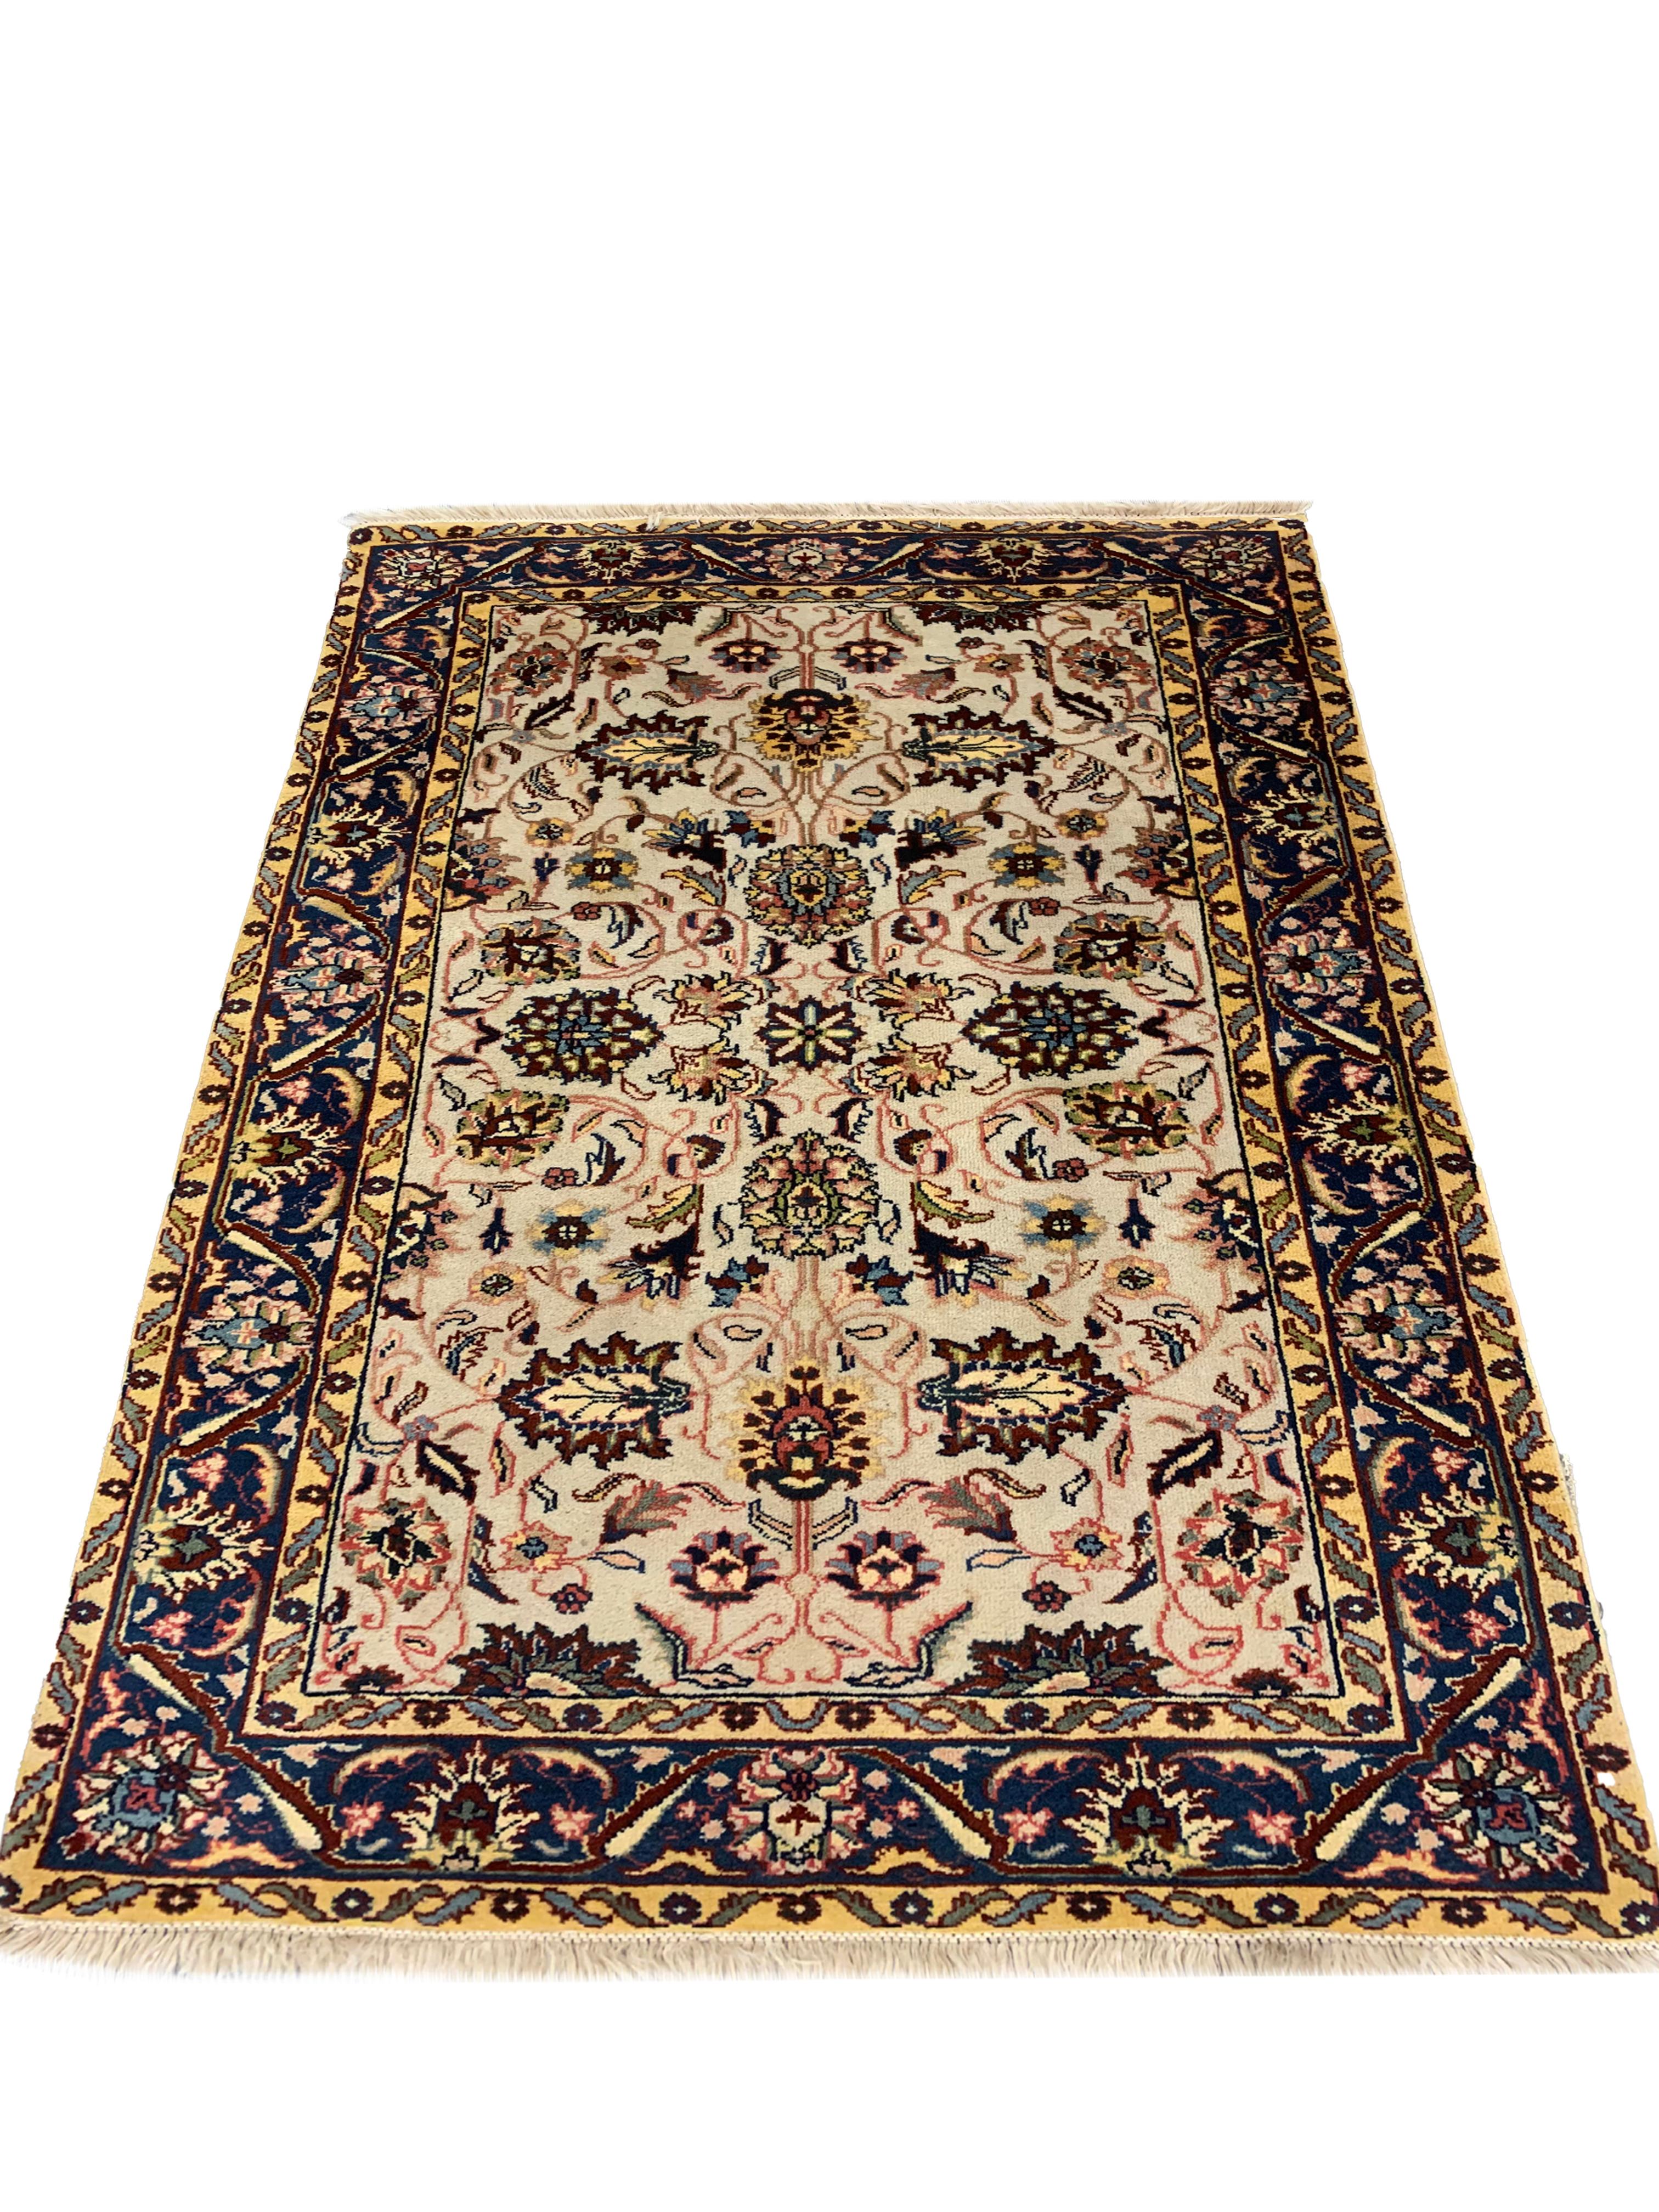 Ce beau tapis en laine est un excellent exemple de tapis tissés à la main en Inde. Ce tapis vintage présente un design indien traditionnel avec un motif floral symétrique tissé dans des accents de jaune, rouge, bleu et vert. La palette de couleurs